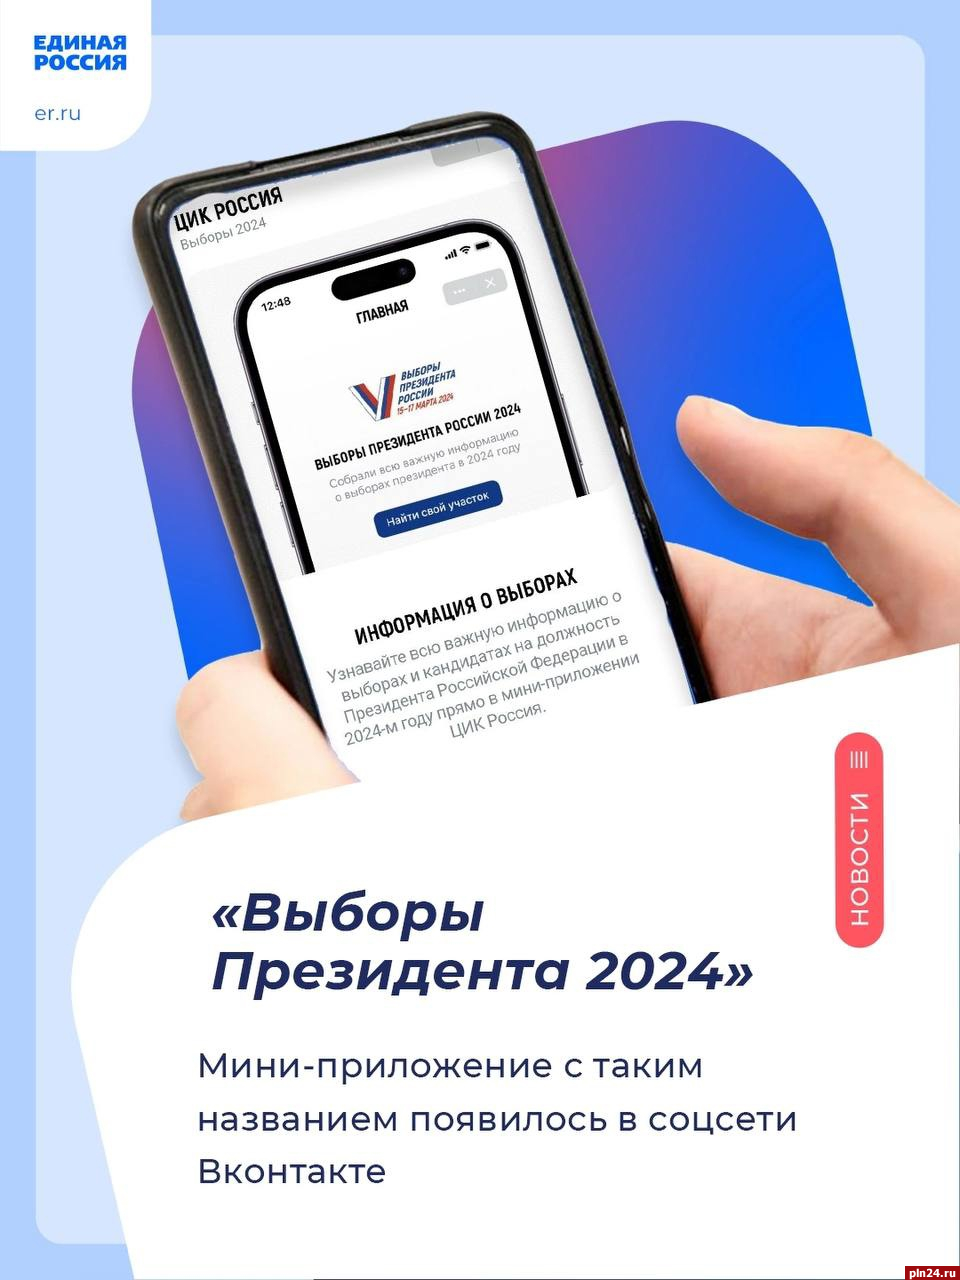 Мини-приложение «Выборы президента 2024» появилось в соцсети «ВКонтакте»